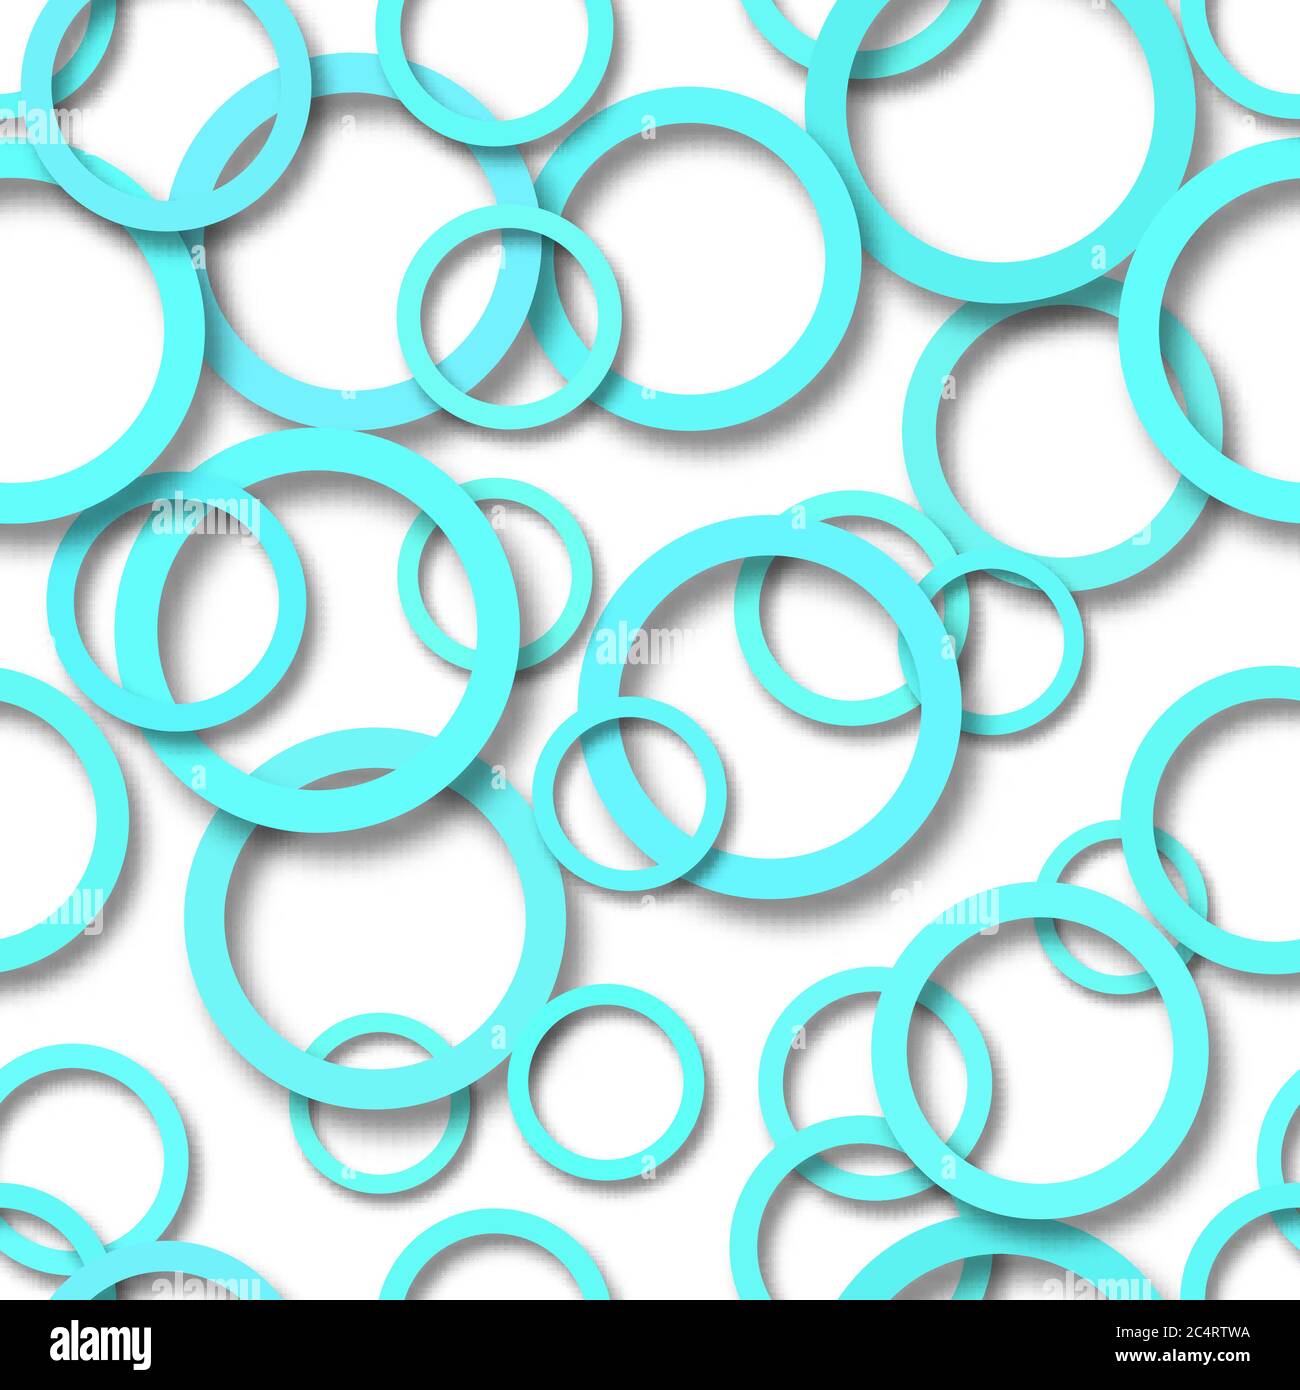 Motif abstrait sans couture d'anneaux bleu clair disposés aléatoirement avec des ombres douces sur fond blanc Illustration de Vecteur